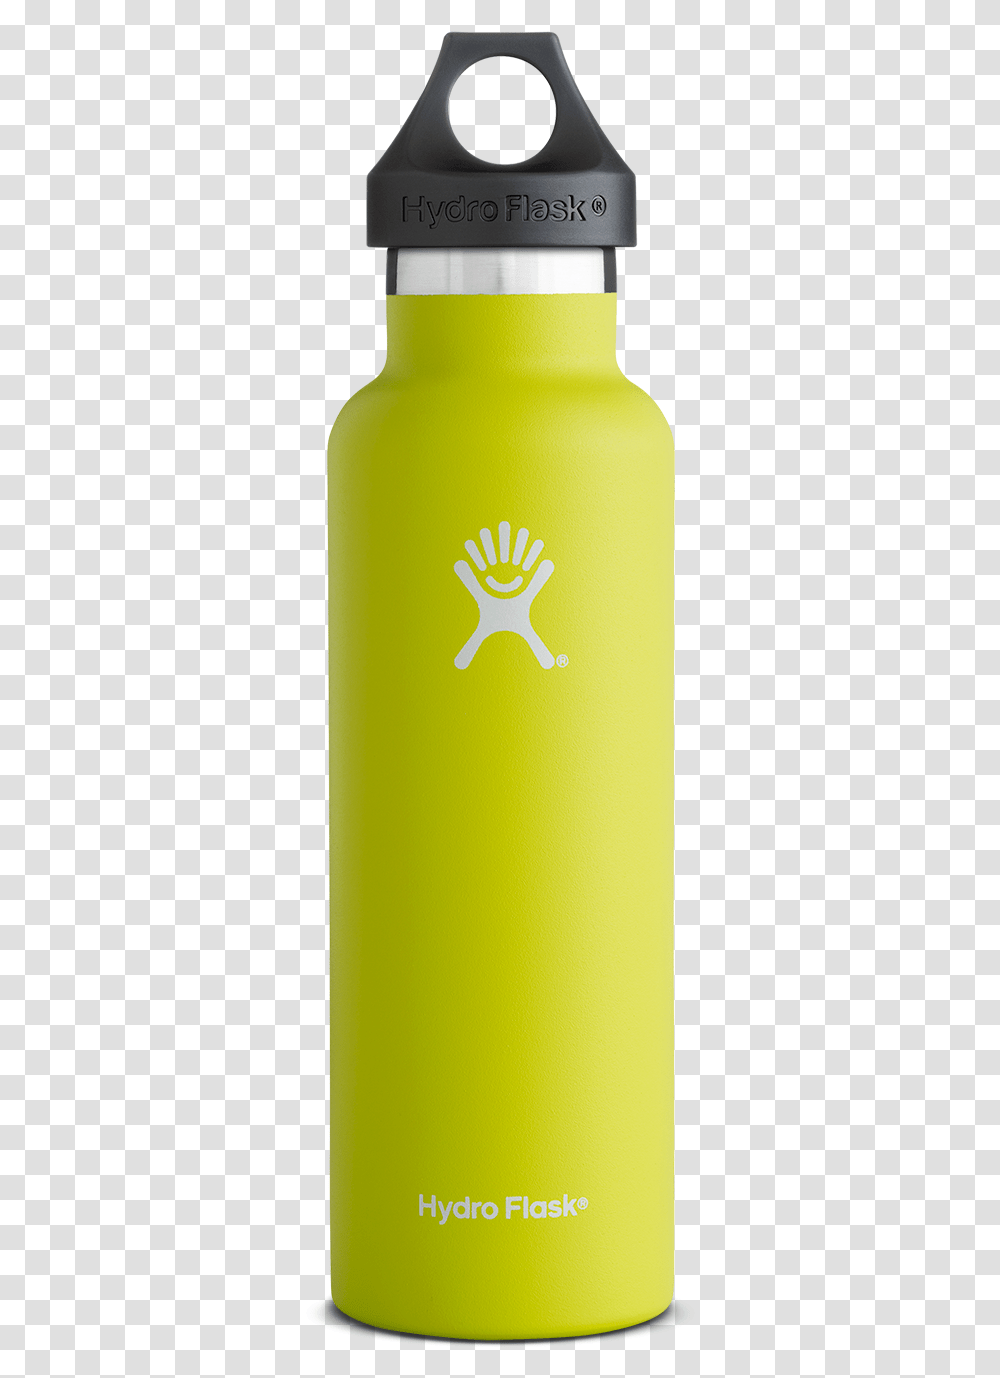 Fiji Water Bottle, Beverage, Drink, Shaker, Alcohol Transparent Png